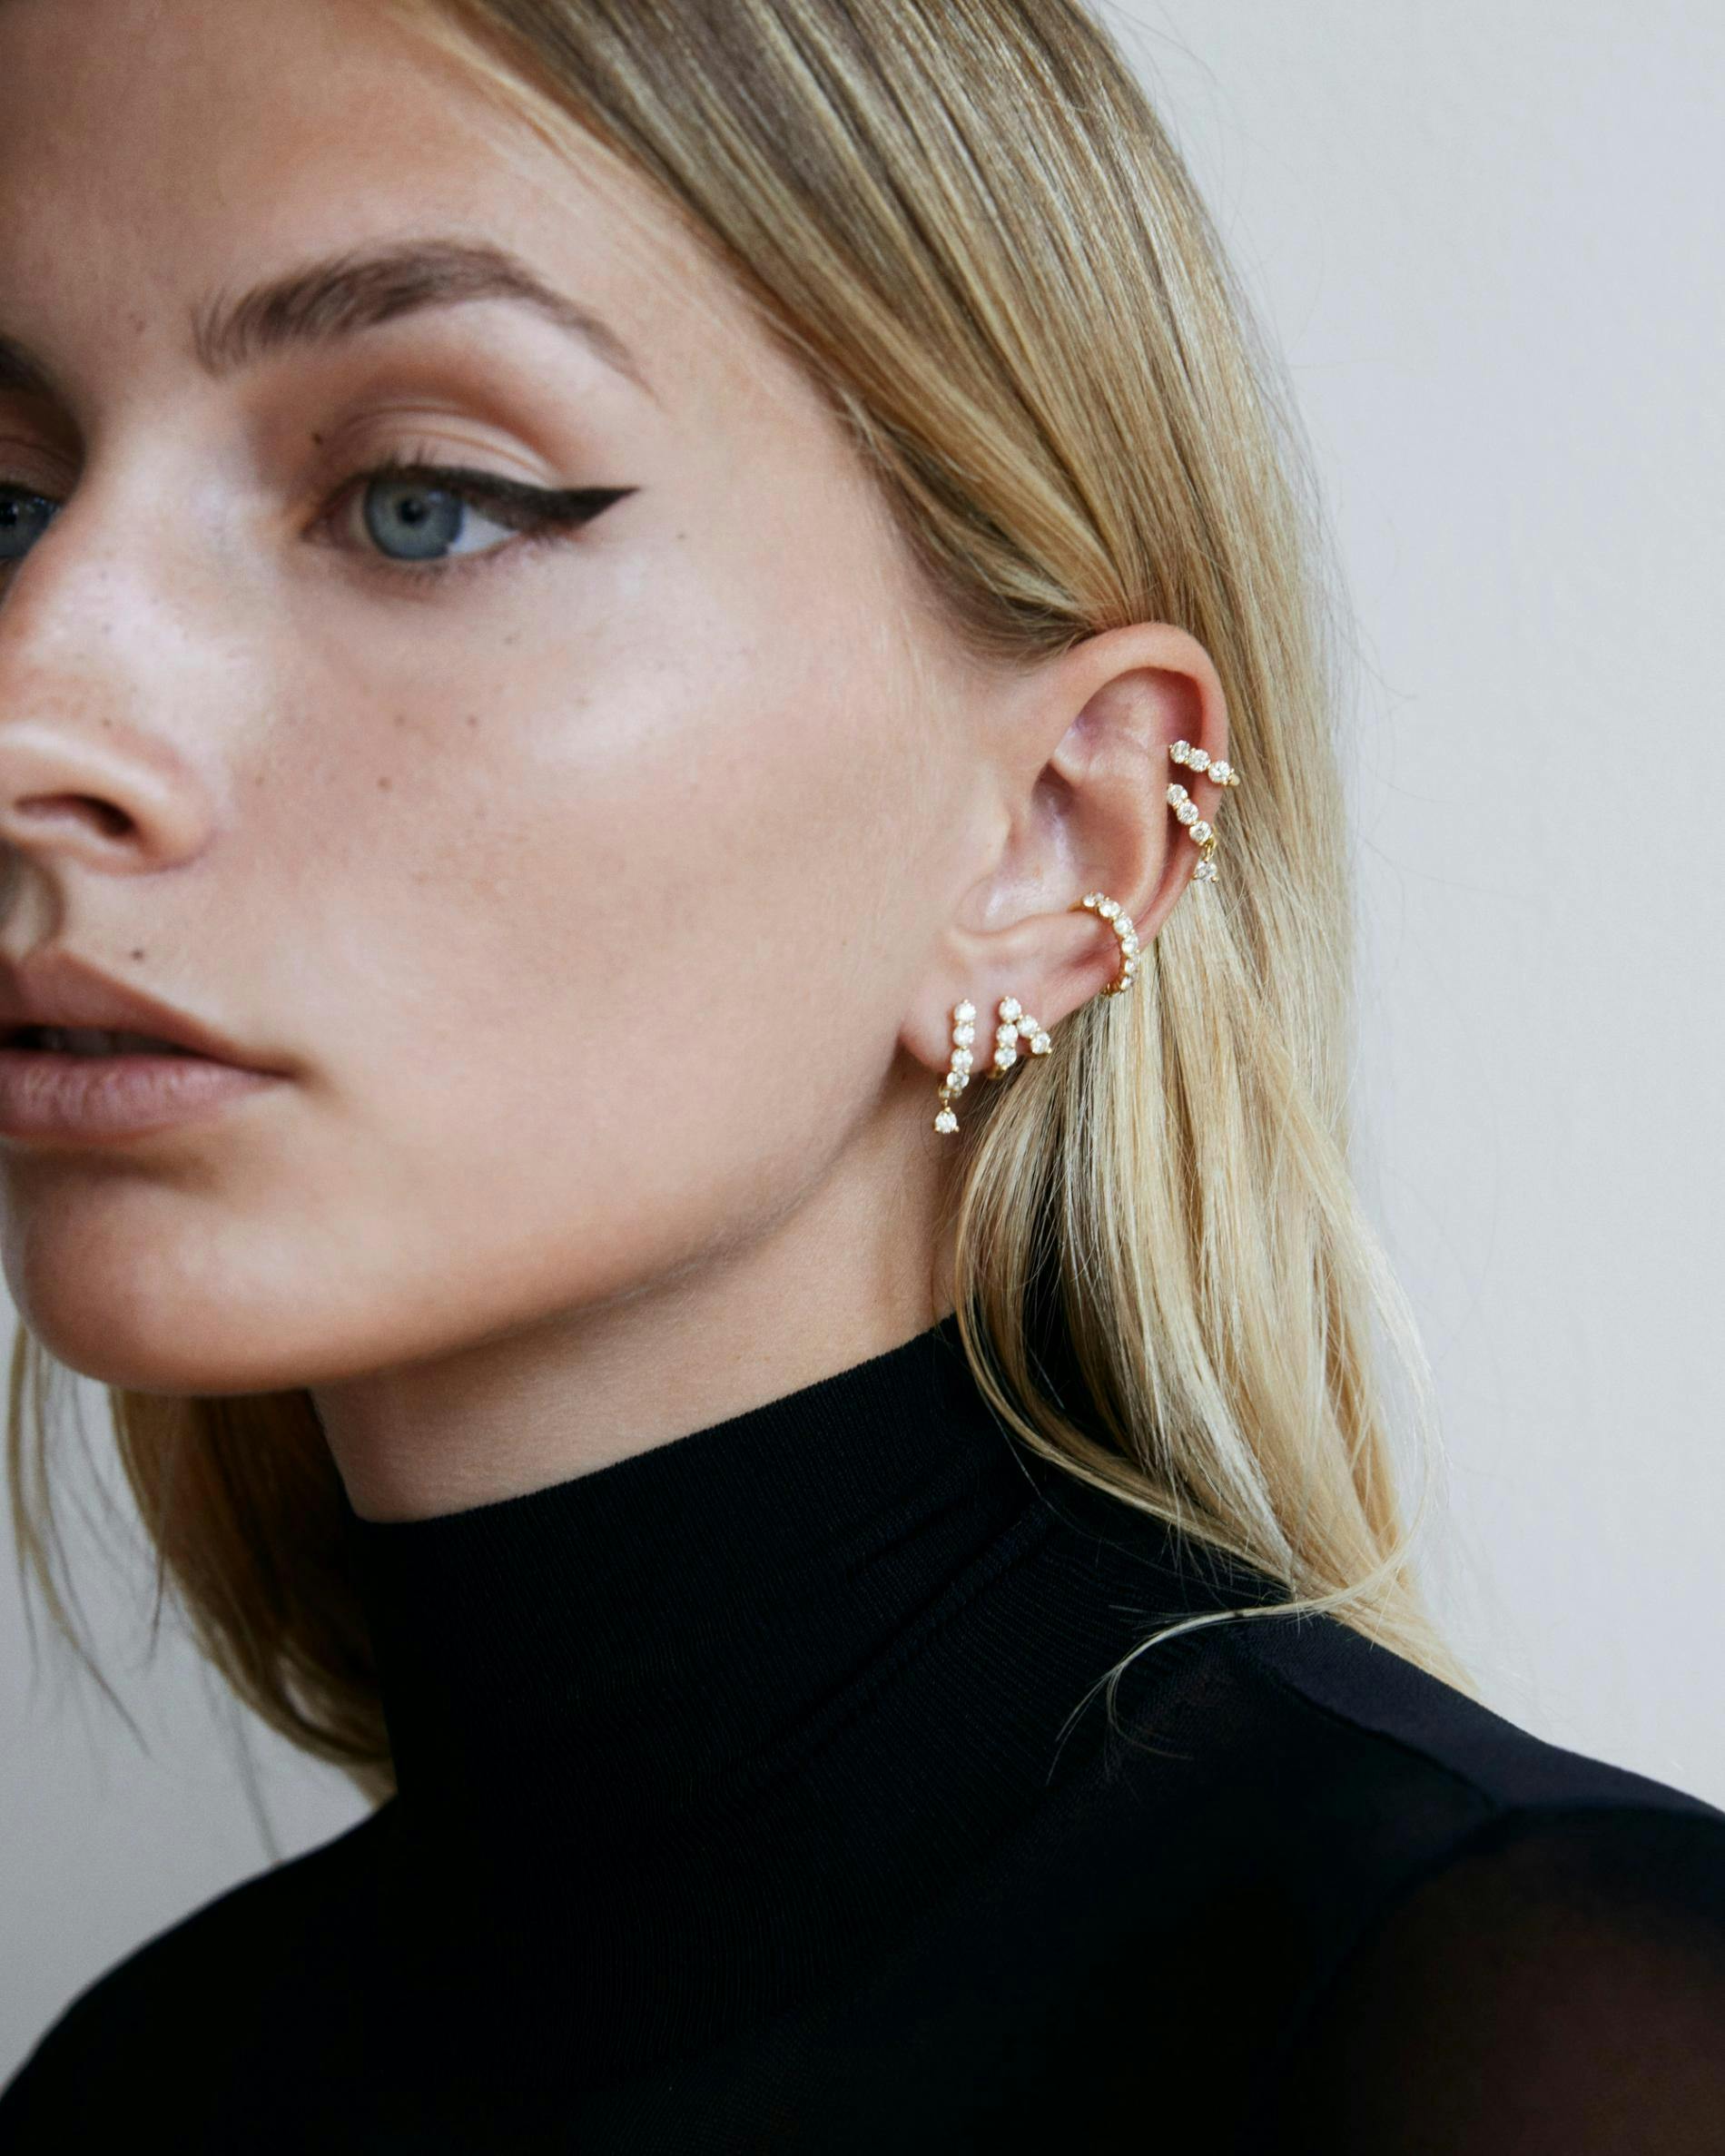 Model wearing multiple diamond earrings with black turtleneck